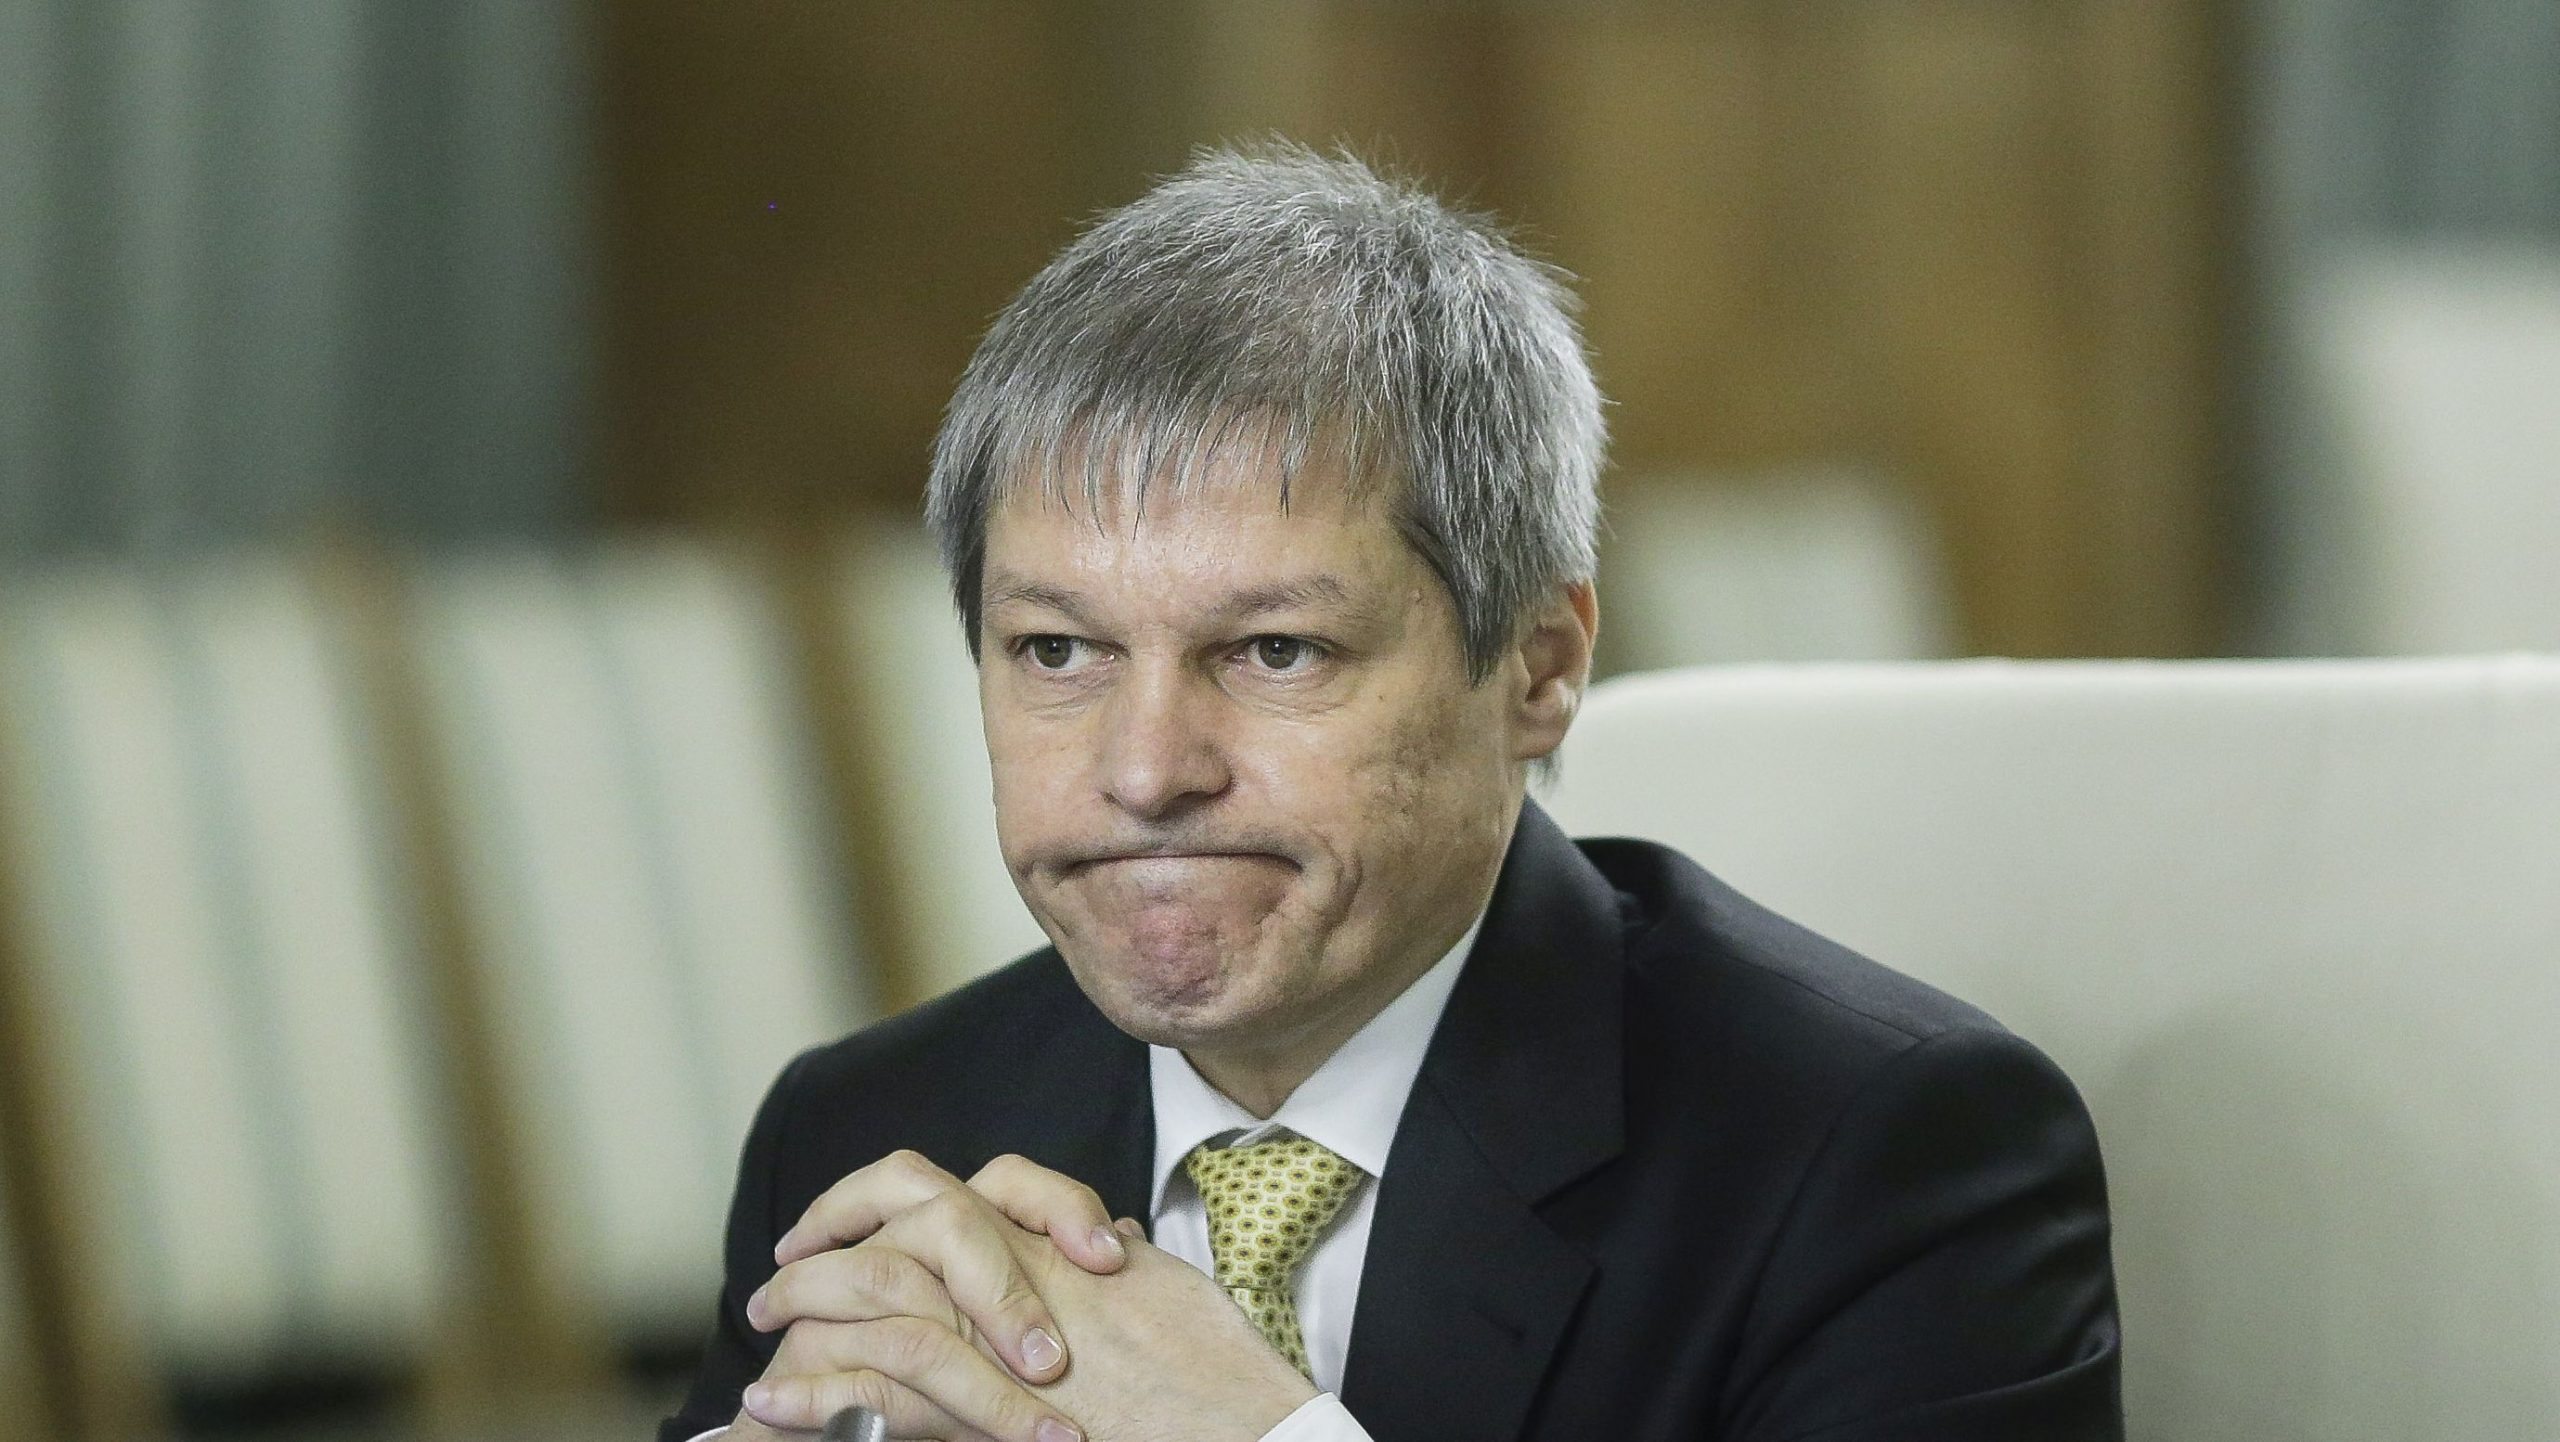 Partidul lui Cioloș, invizibil în sondajele de opinie. REPER nu are nicio şansă să intre în Parlament